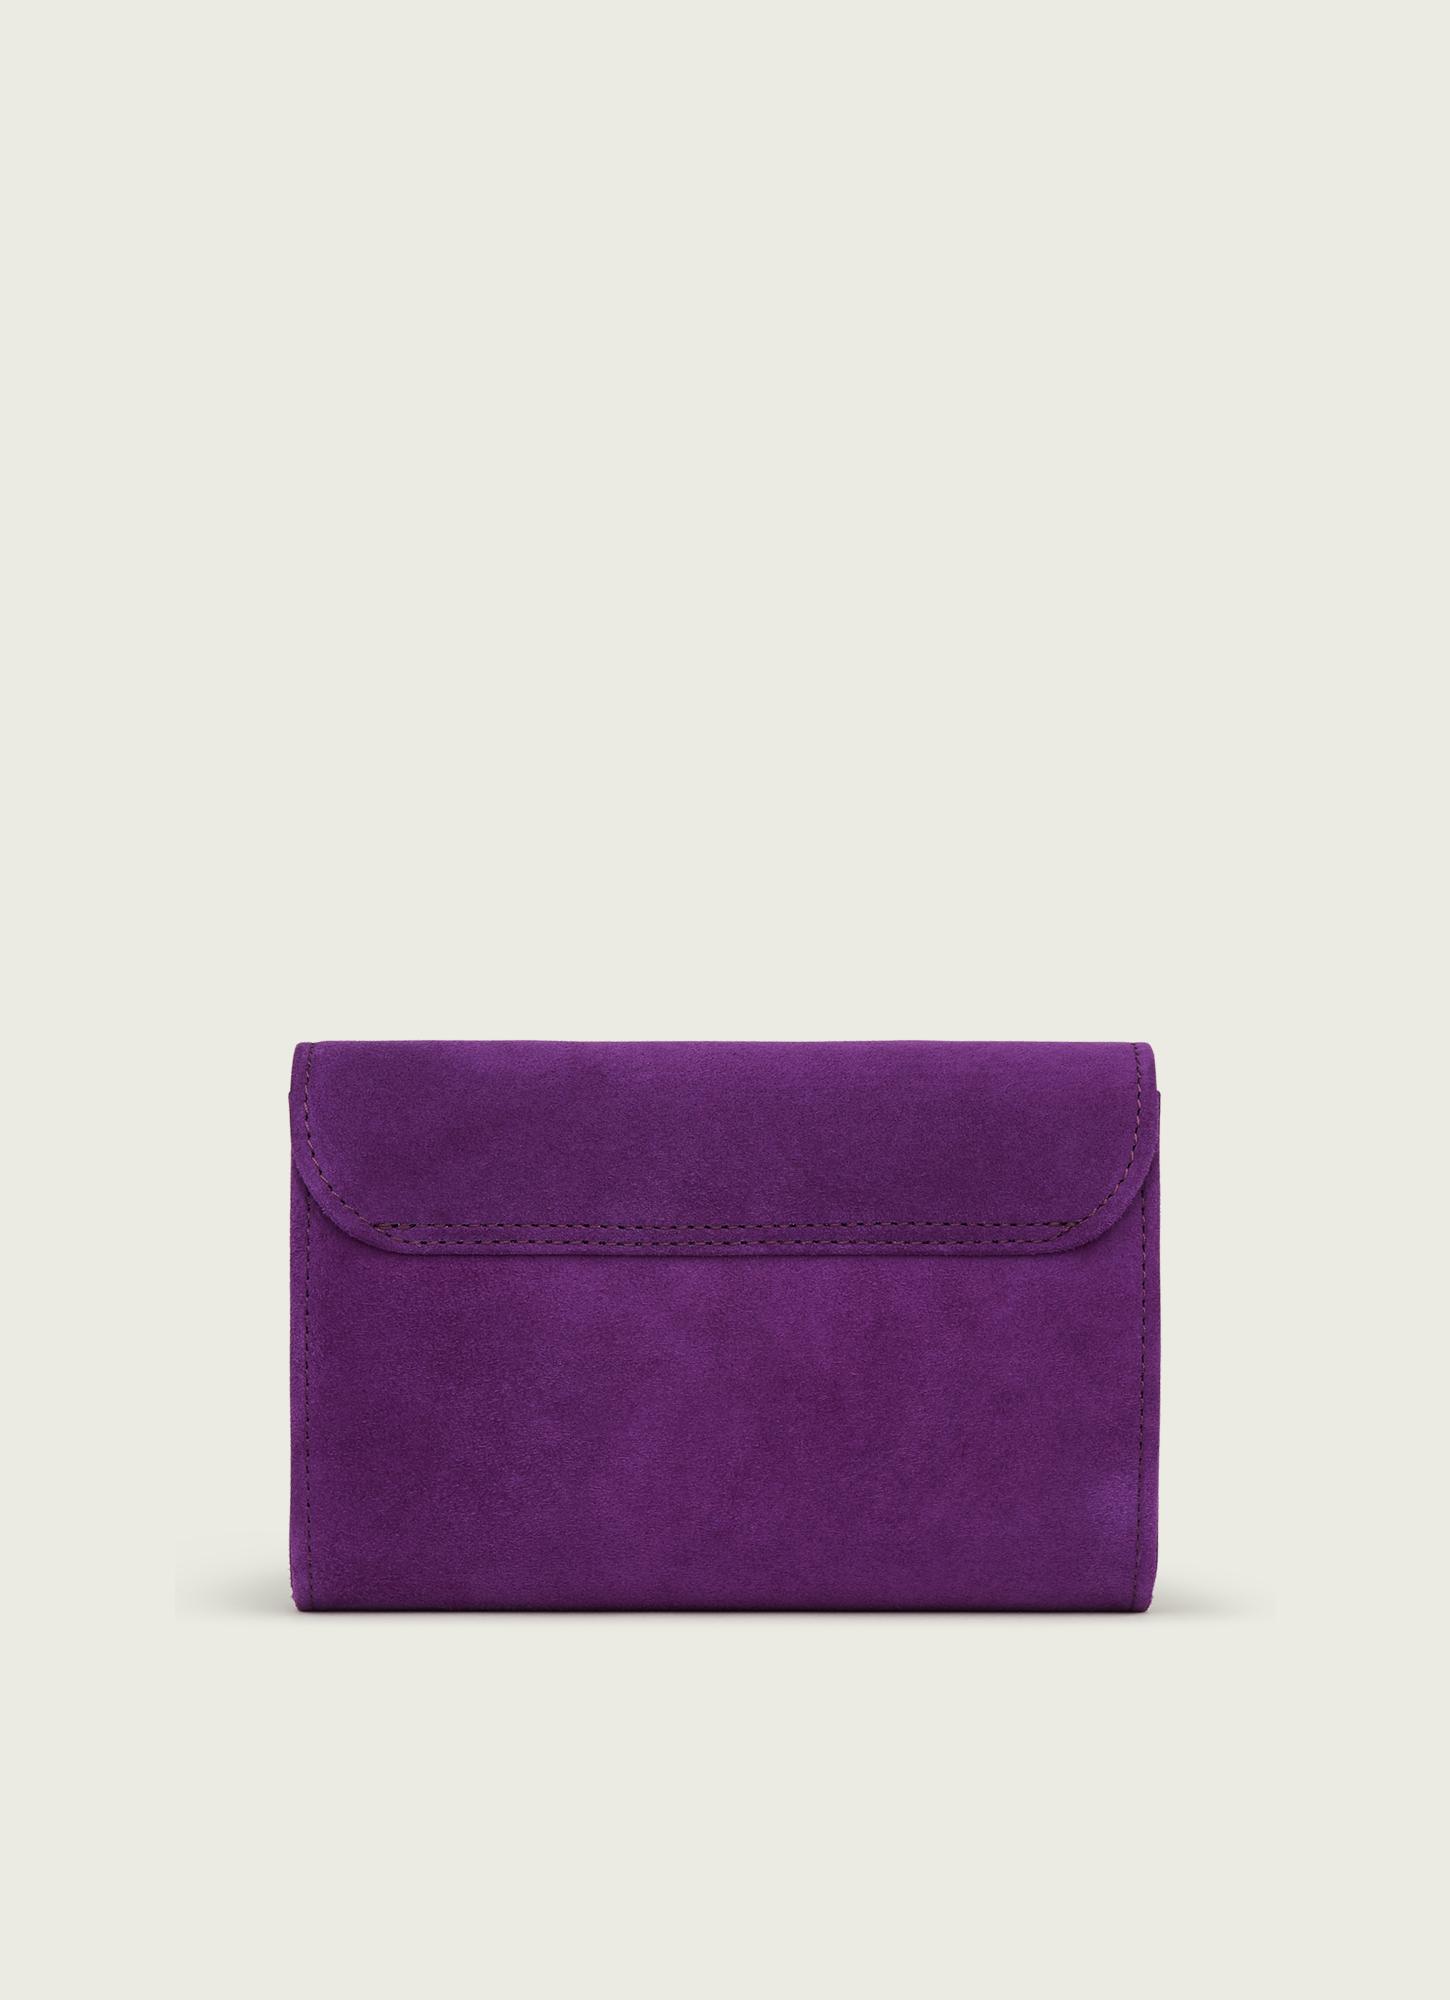 Purple Leather Bag Purple Handbags Purple Top Handle Purse Purple Purses  Leather Tote Bag Leather Handback Purse Embossed Purse Gift Idea - Etsy